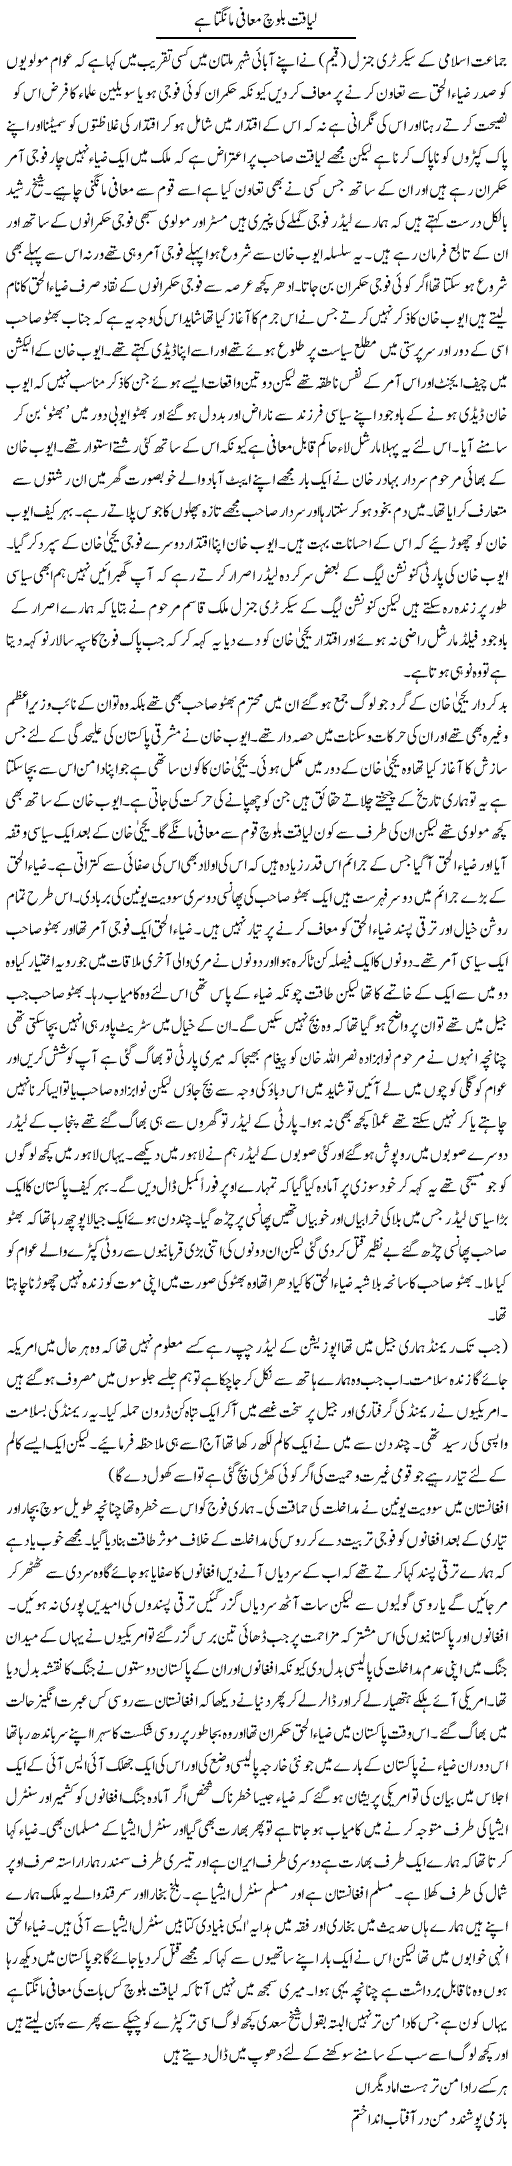 Forgiveness of Liaquat Baloch Express Column 20 March 2011